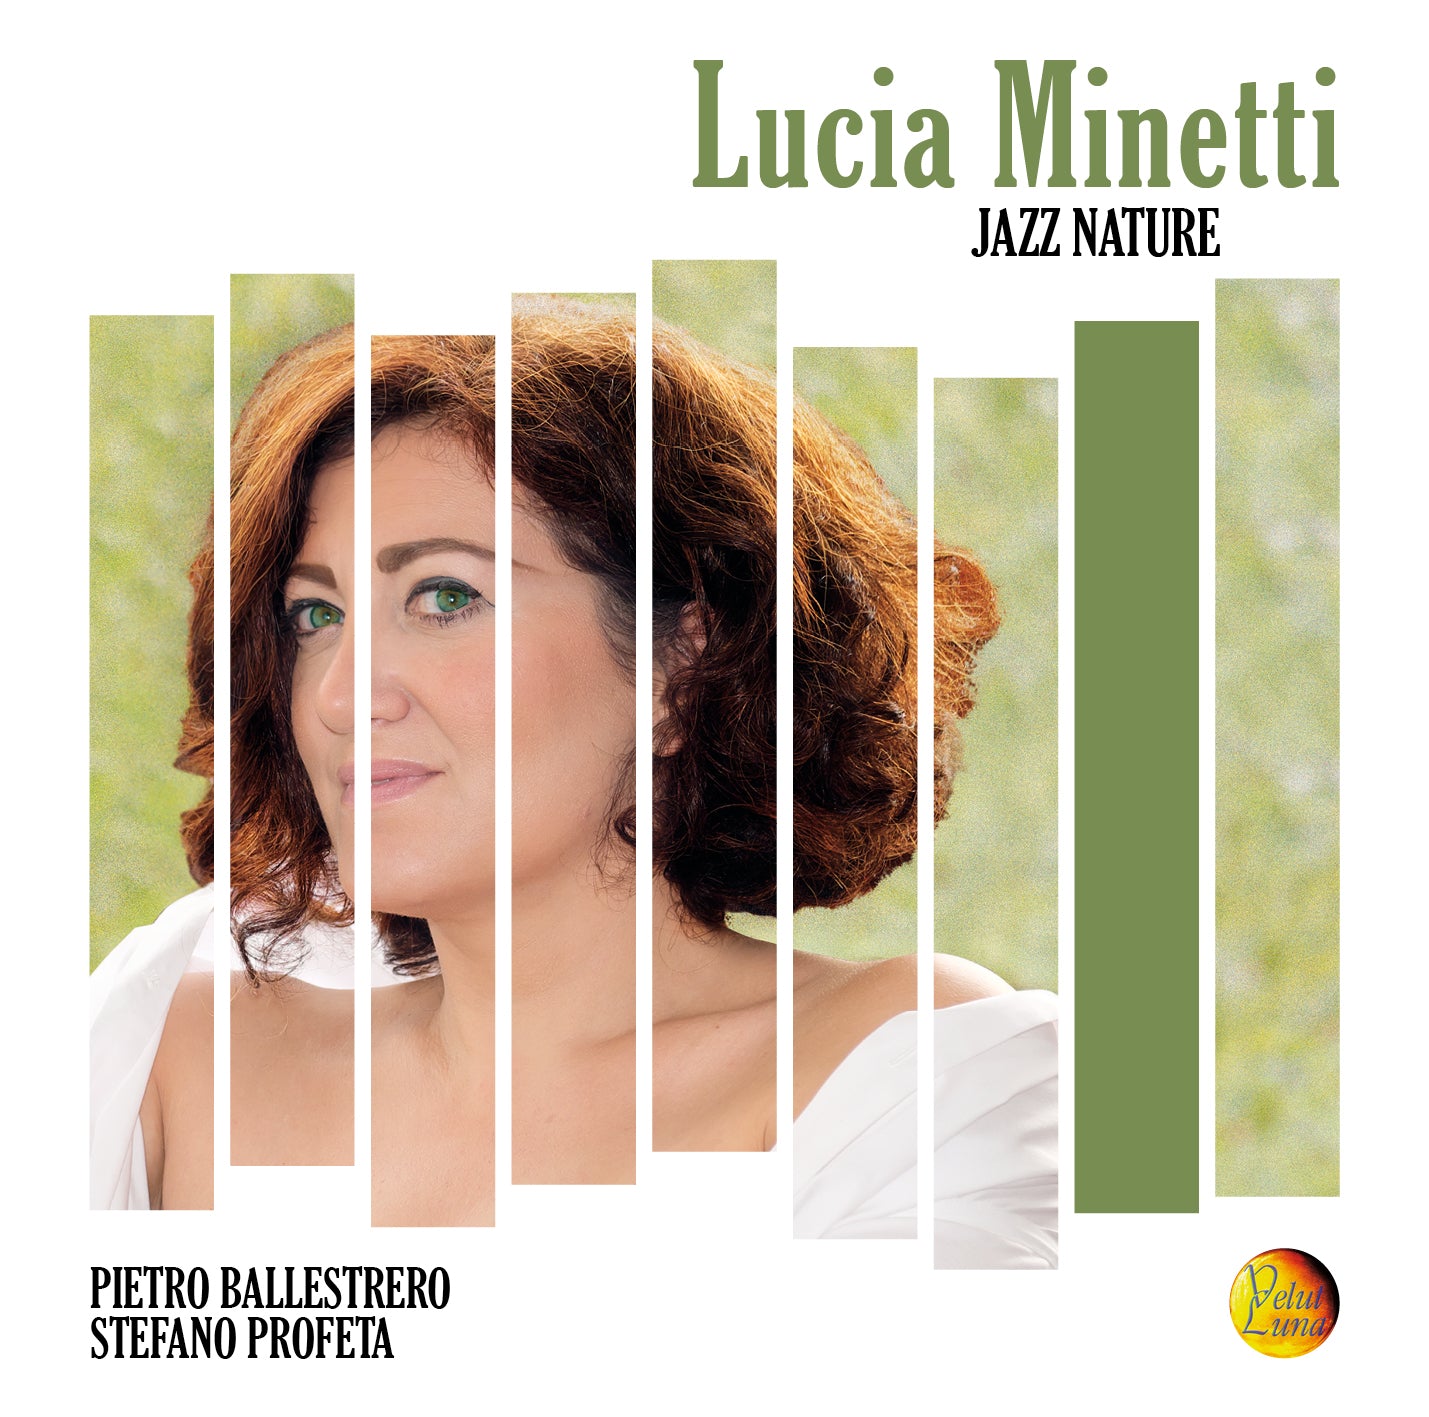 JAZZ NATURE - Lucia Minetti